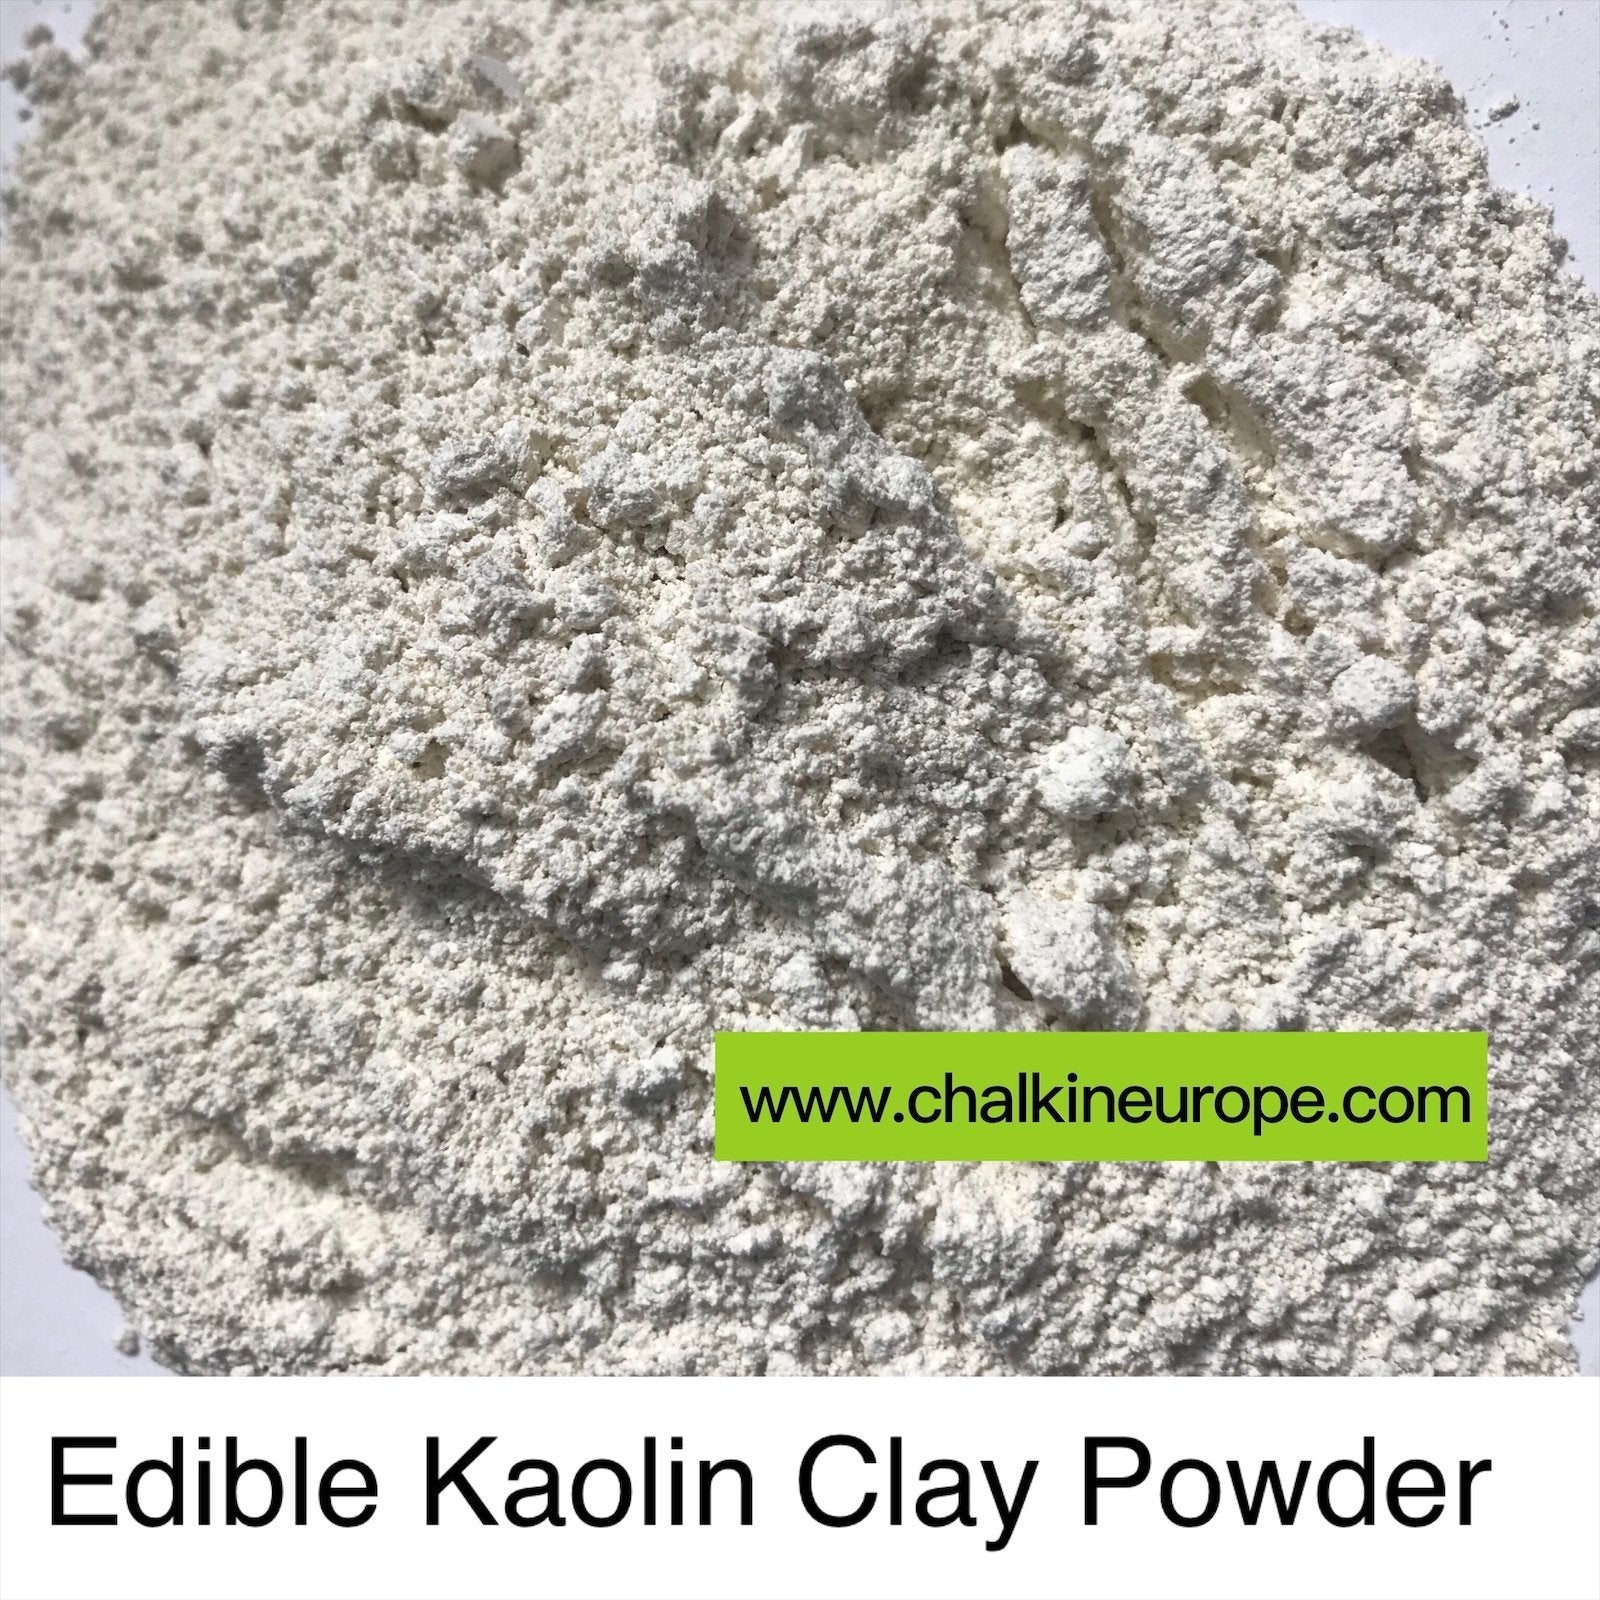 Edible Kaolin Clay Powder Edible clay